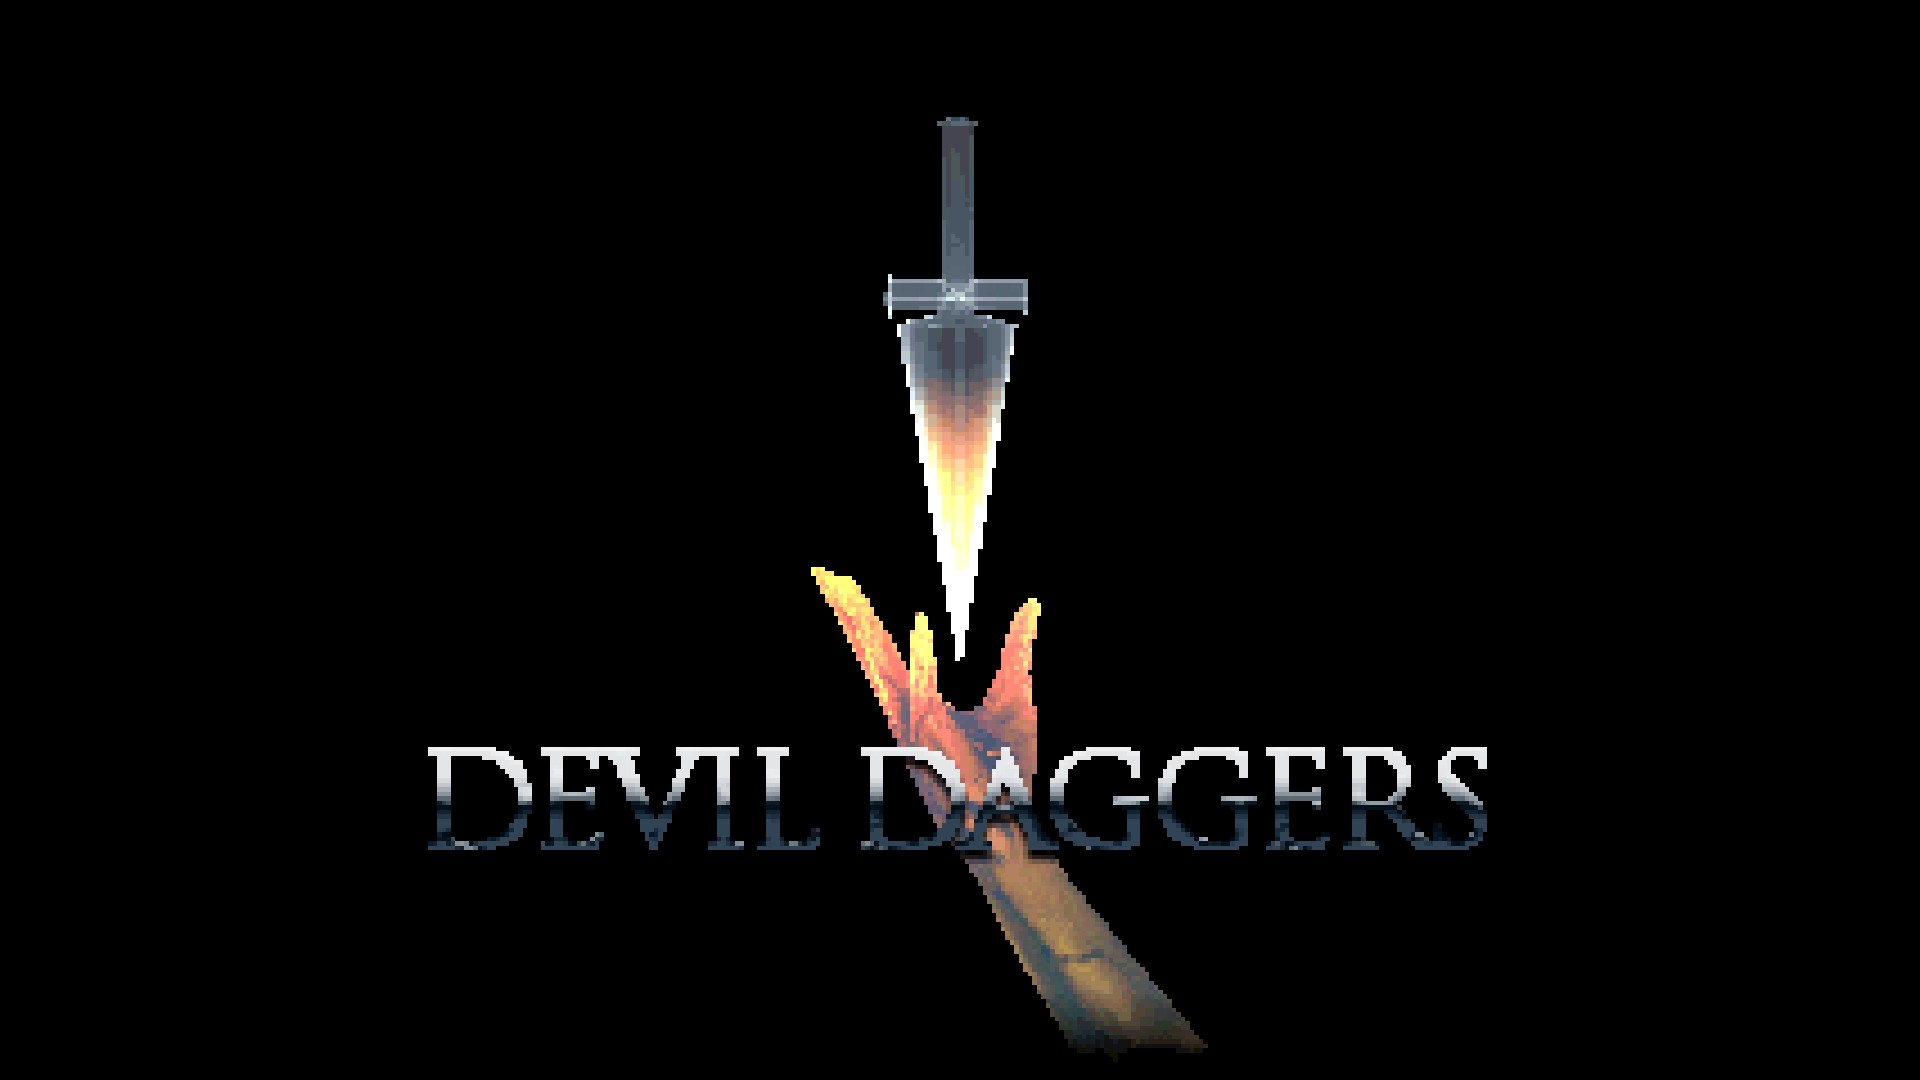 A screenshot showing the title menu of Devil Daggers, a video game.